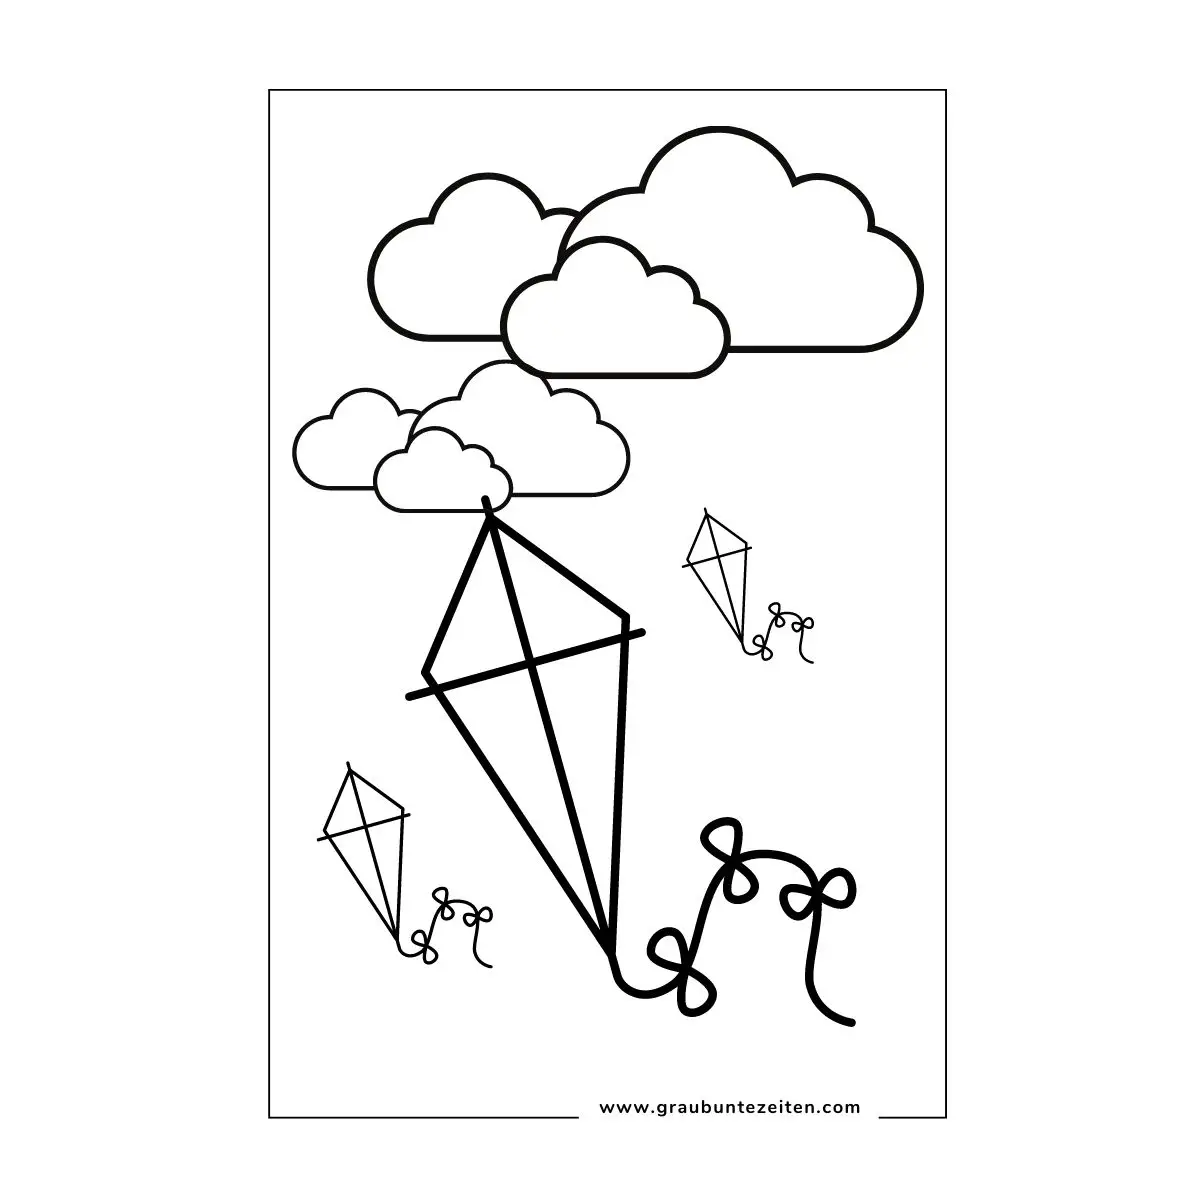 Drei Drachen zum Ausmalen mit Schleifen schweben vor einem Wolkenhimmel.